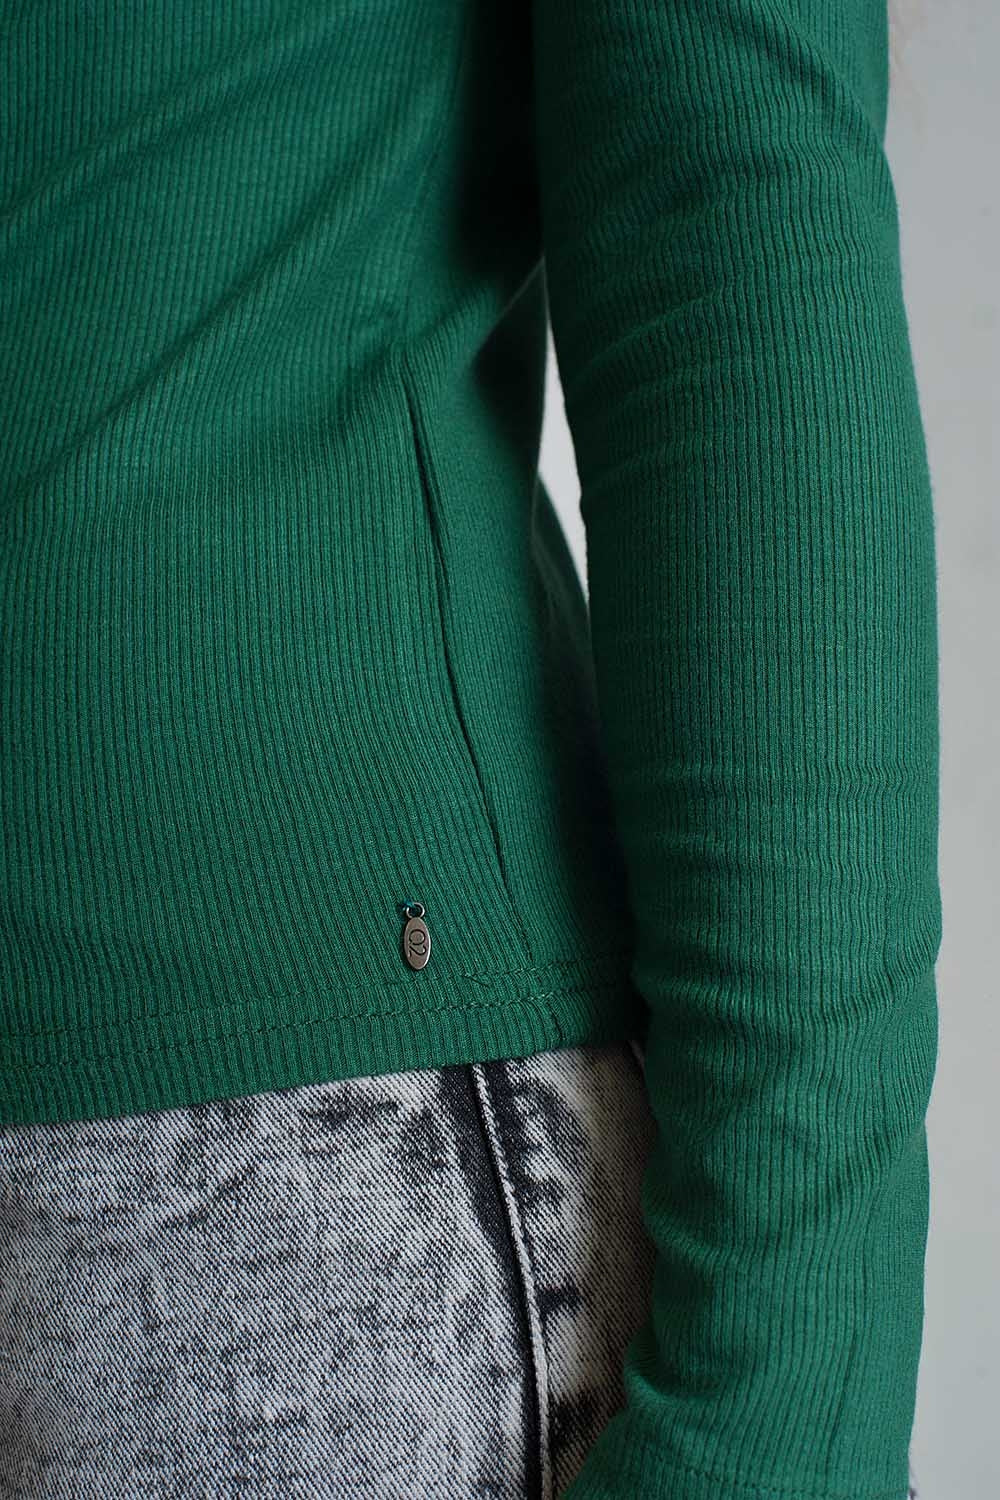 Asymmetric Neck Sweater in Green